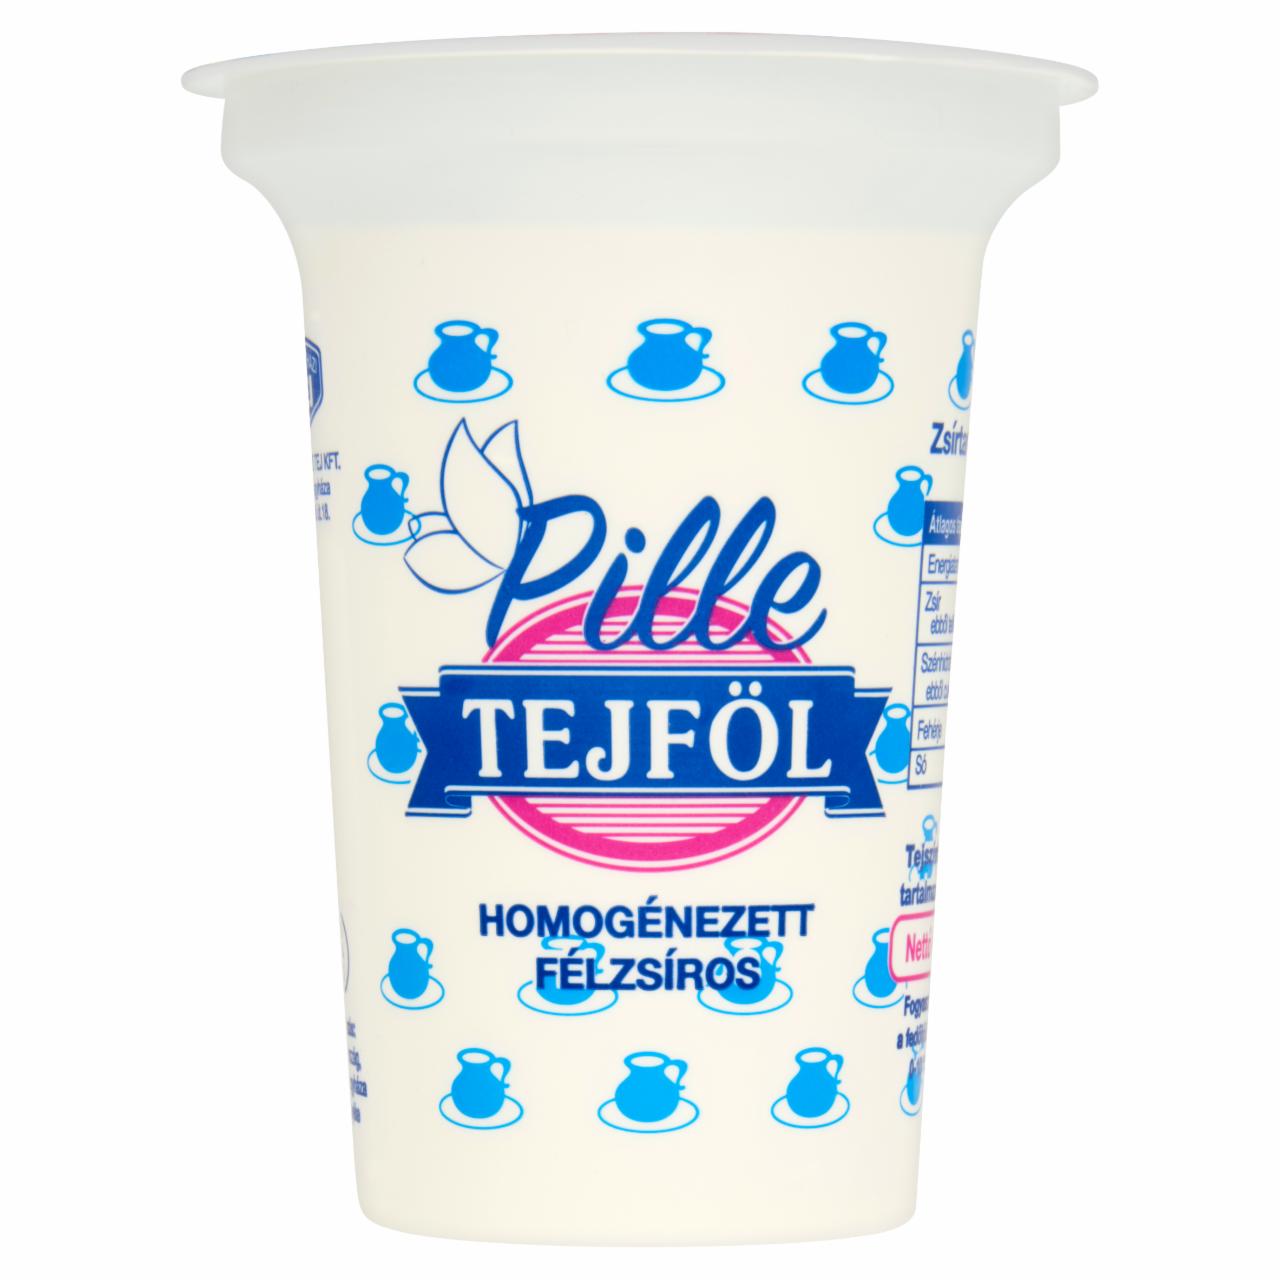 Képek - Félegyházi Tej Pille félzsíros tejföl 325 g